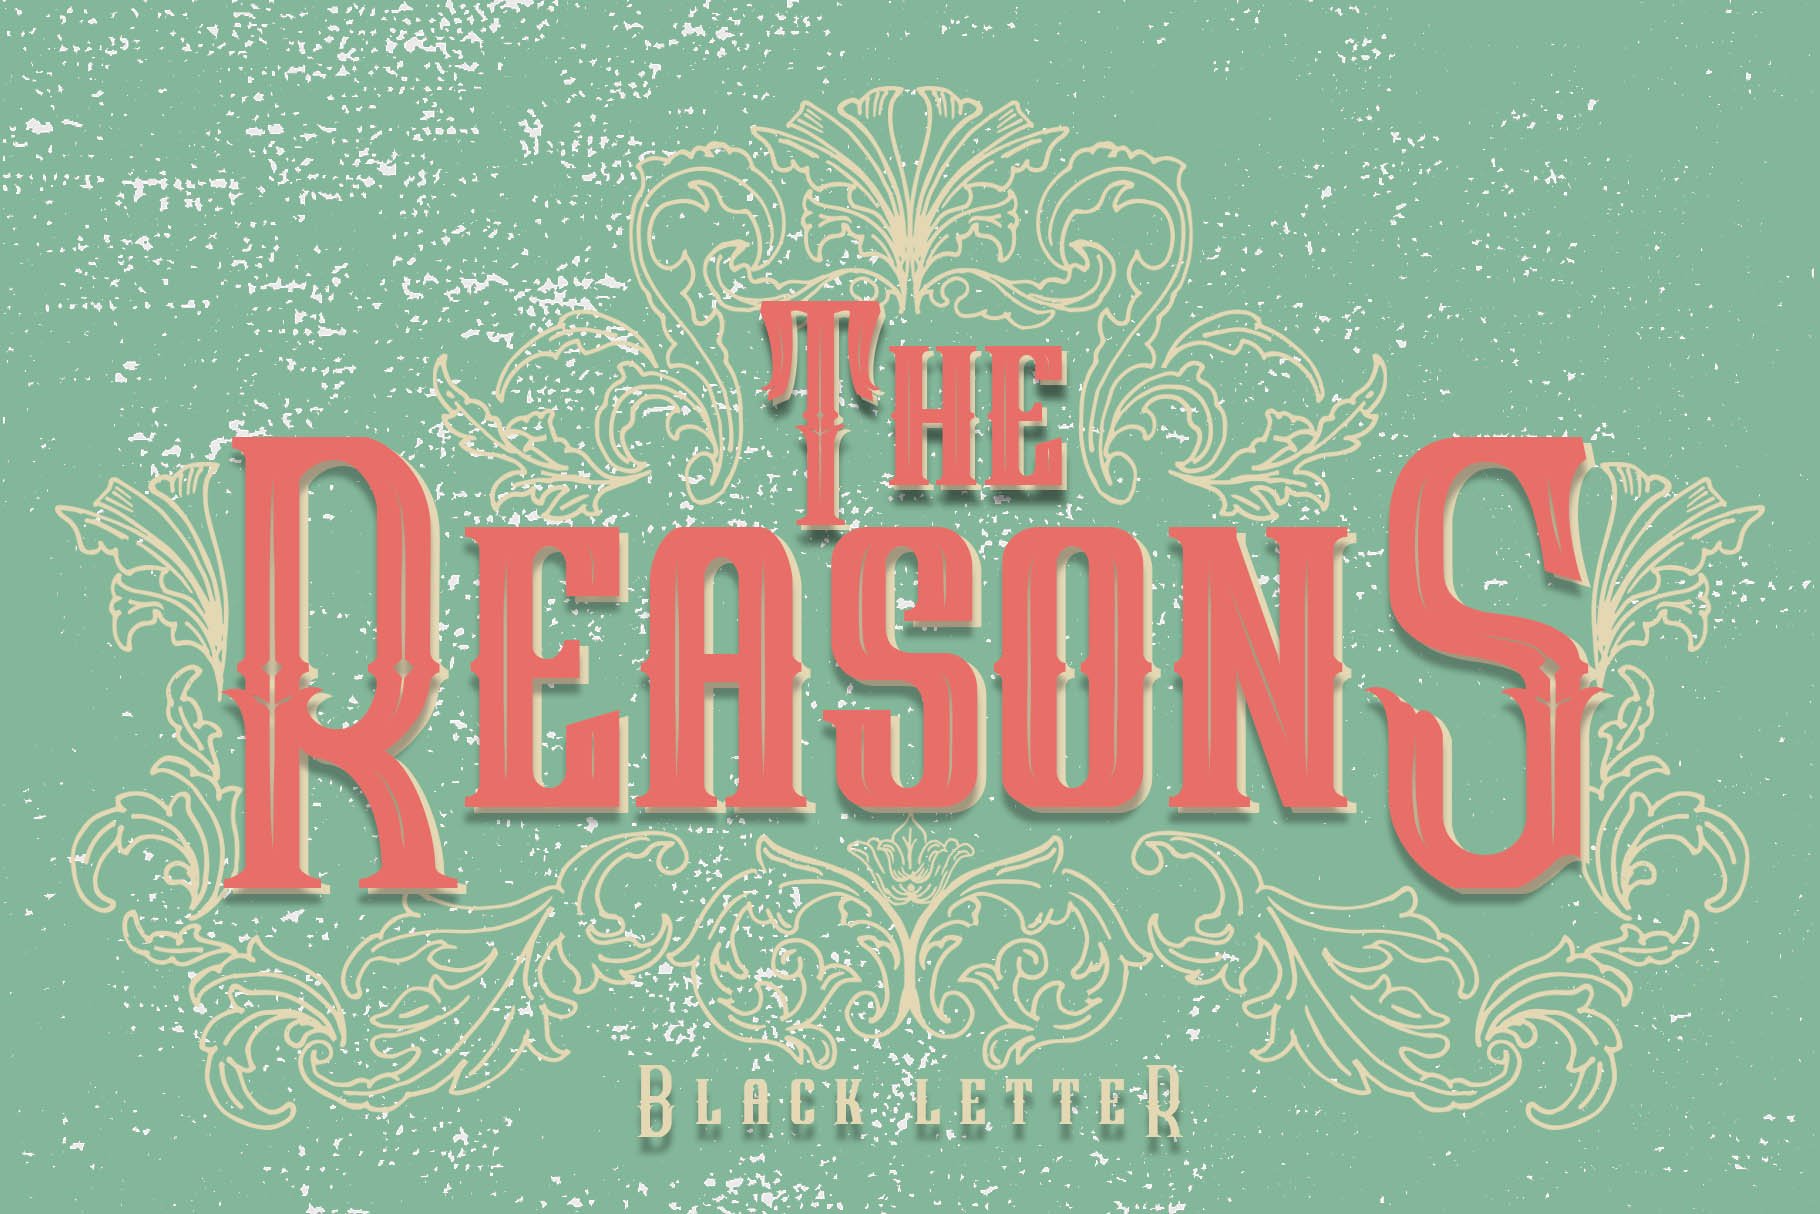 The Reasons Blackletter + Bonus cover image.